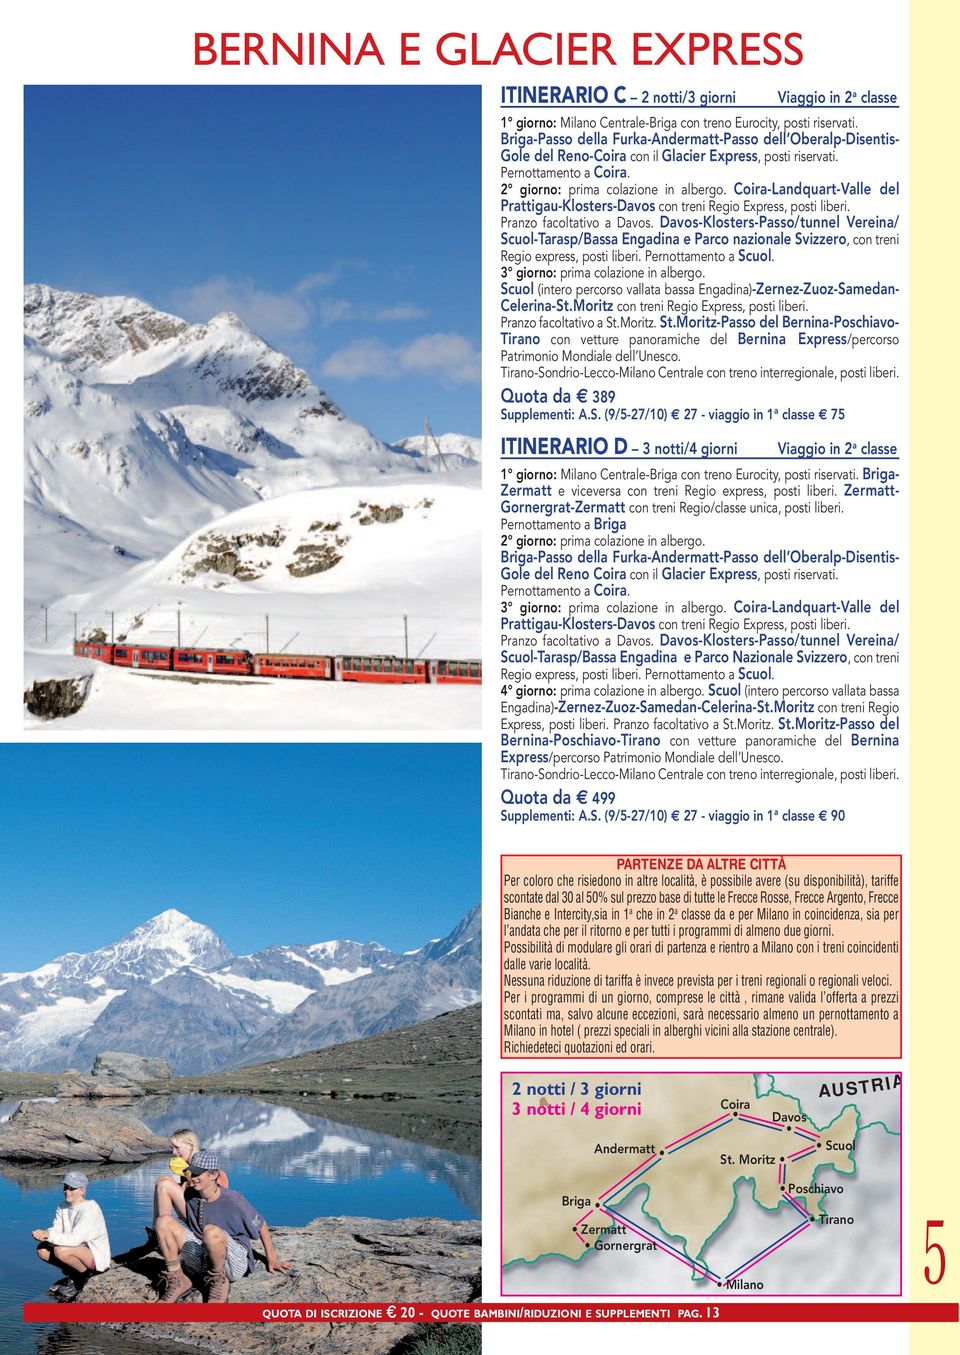 Coira-Landquart-Valle del Prattigau-Klosters-Davos con treni Regio Express, posti liberi. Pranzo facoltativo a Davos.